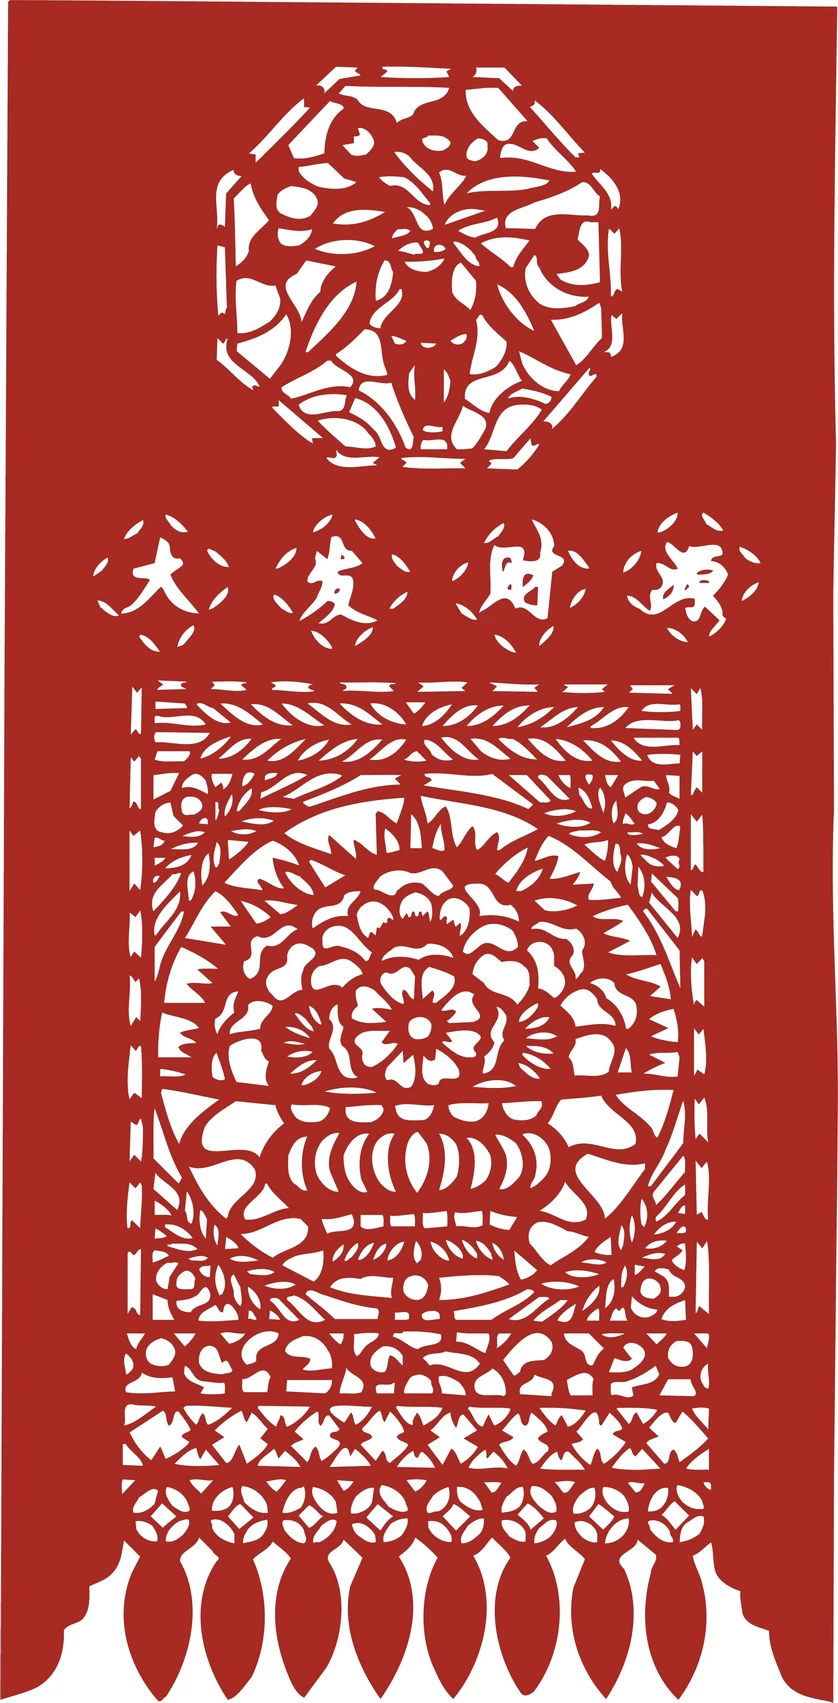 中国风中式传统喜庆民俗人物动物窗花剪纸插画边框AI矢量PNG素材【1974】